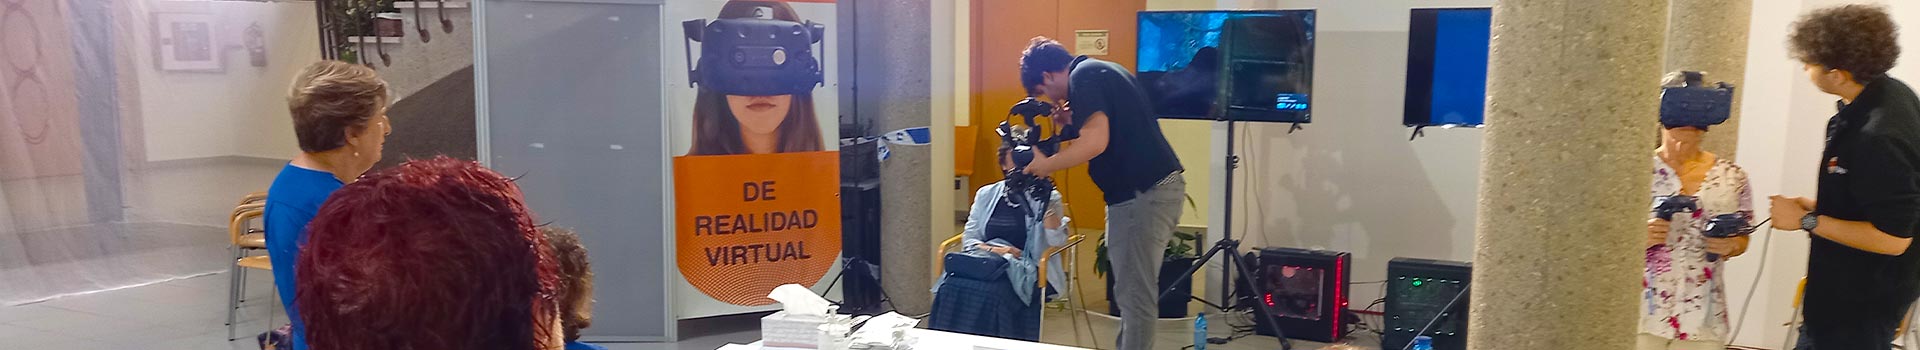 Celebraciones de cumpleaños y otros eventos con realidad virtual en Madrid a domicilio